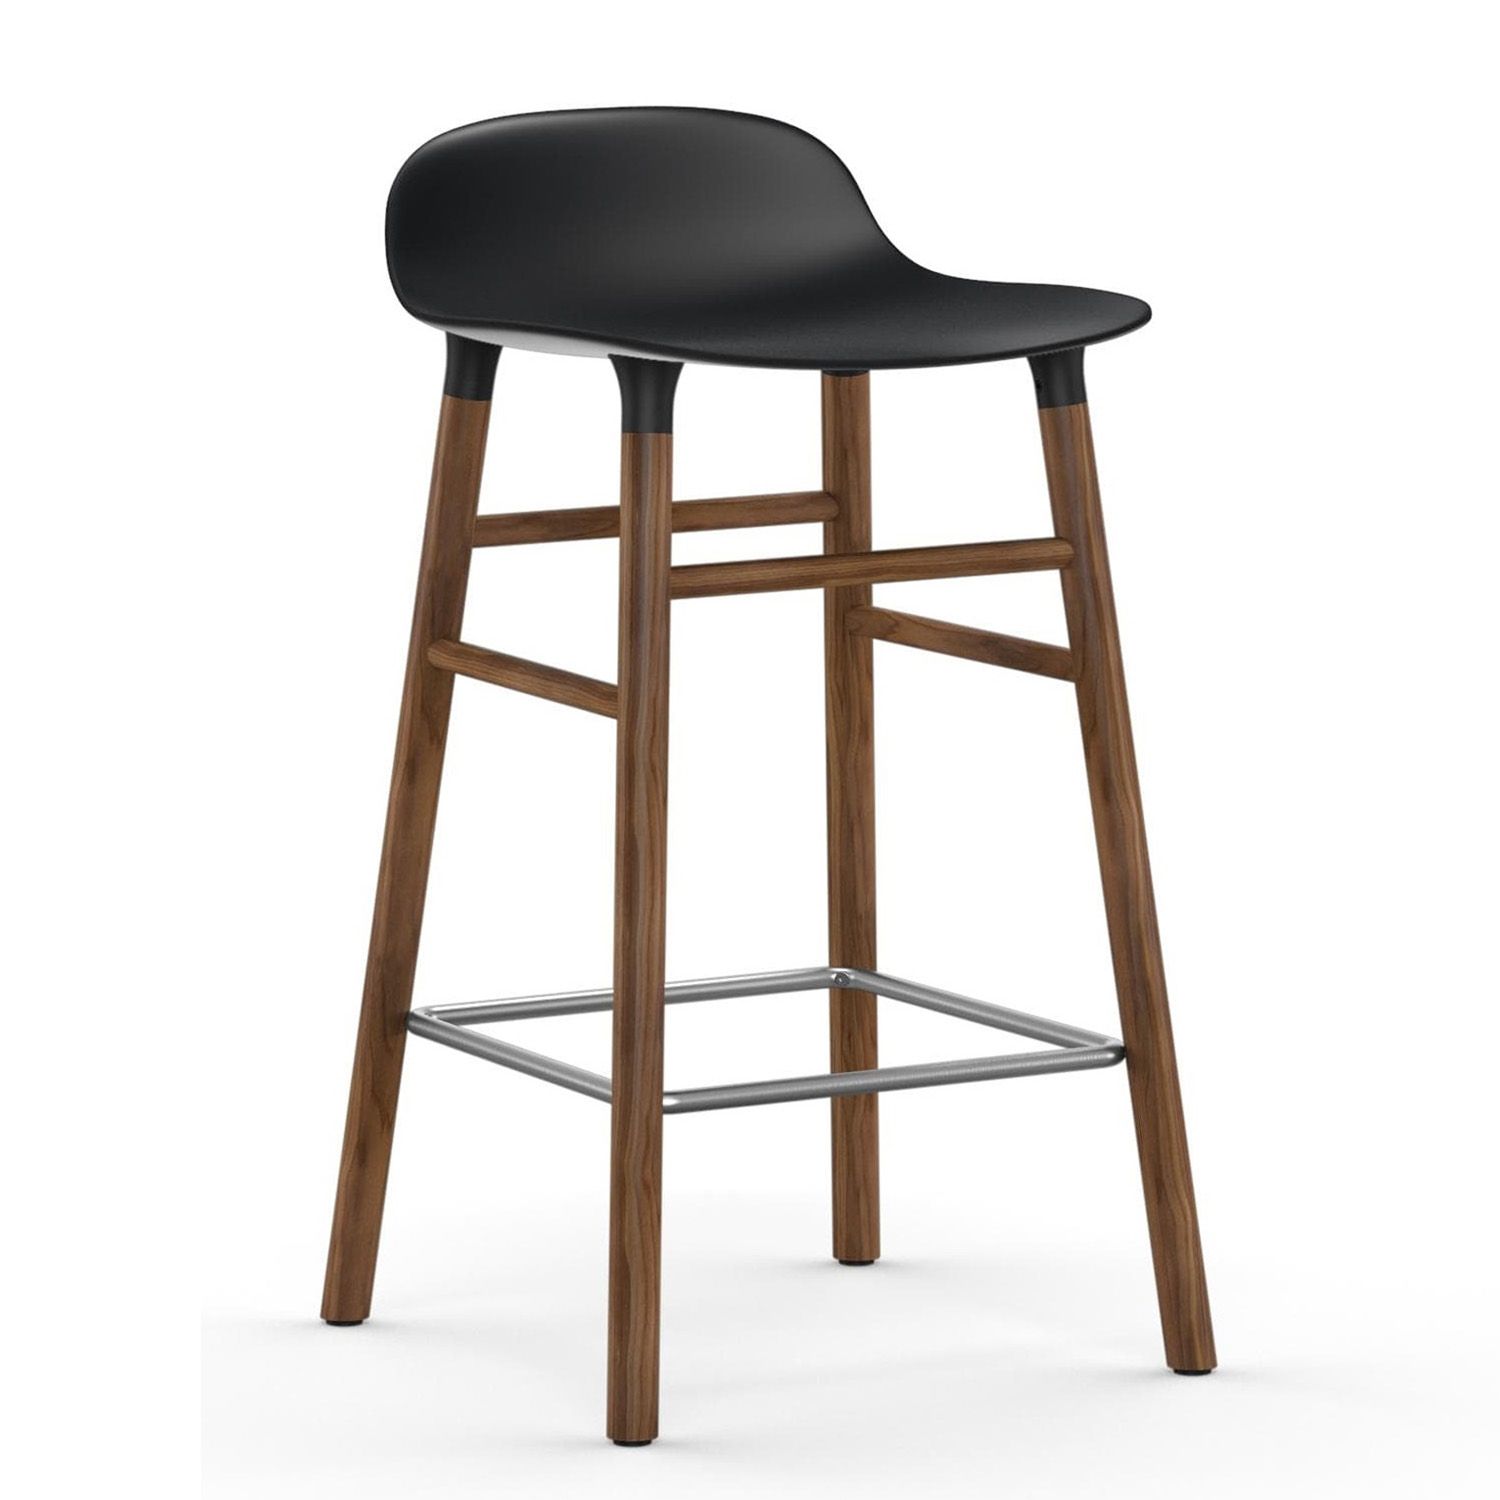 Výprodej Normann Copenhagen designové barové židle Form Barstool Wood (65 cm, černá, ořech) - DESIGNPROPAGANDA